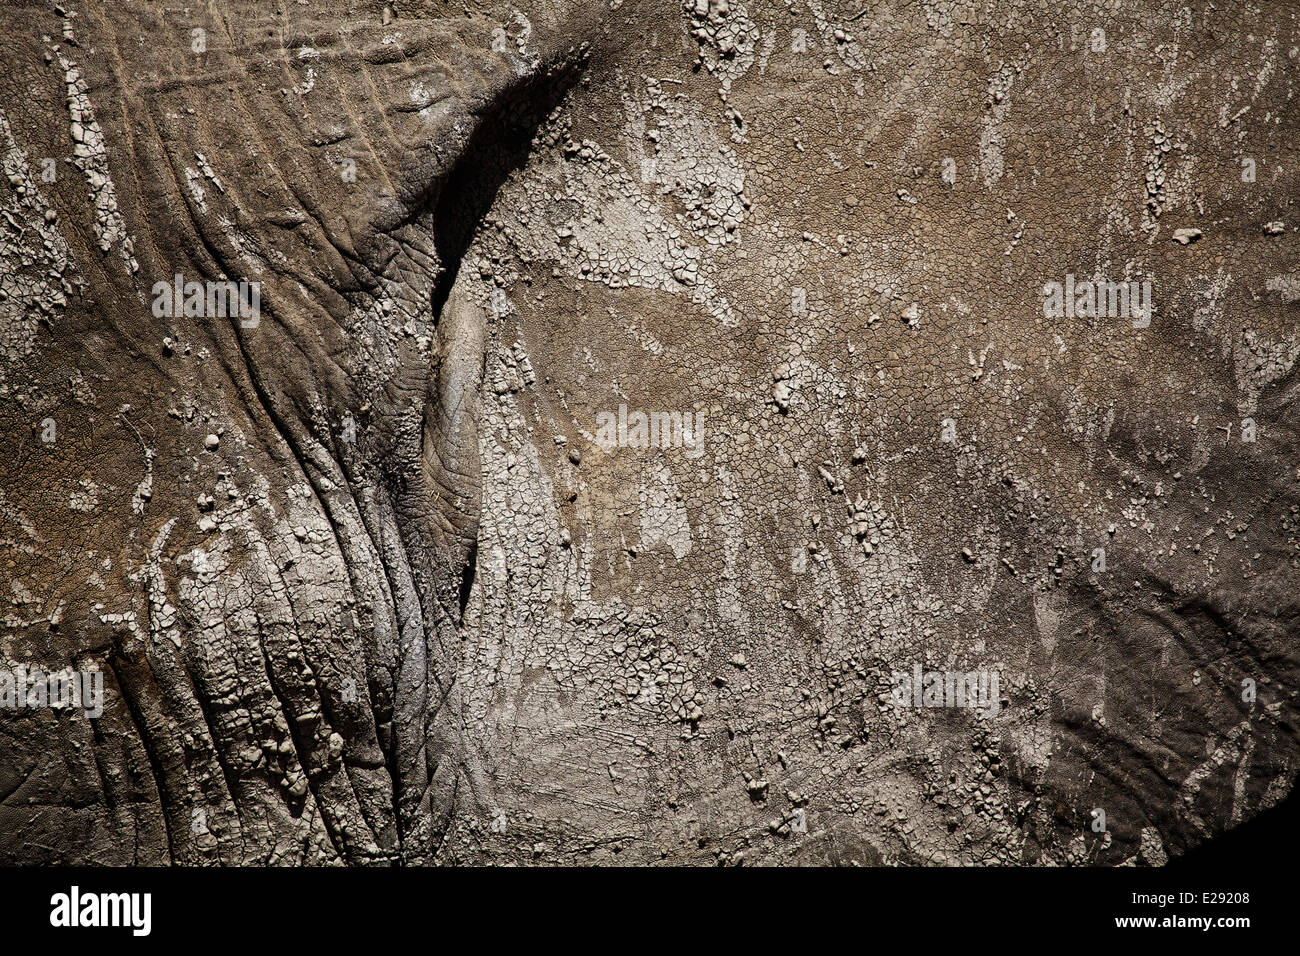 Afrikanischer Elefant (Loxodonta Africana) Erwachsene, close-up der Haut mit trockenem Schlamm, Amboseli N.P., Kenia, Februar Stockfoto